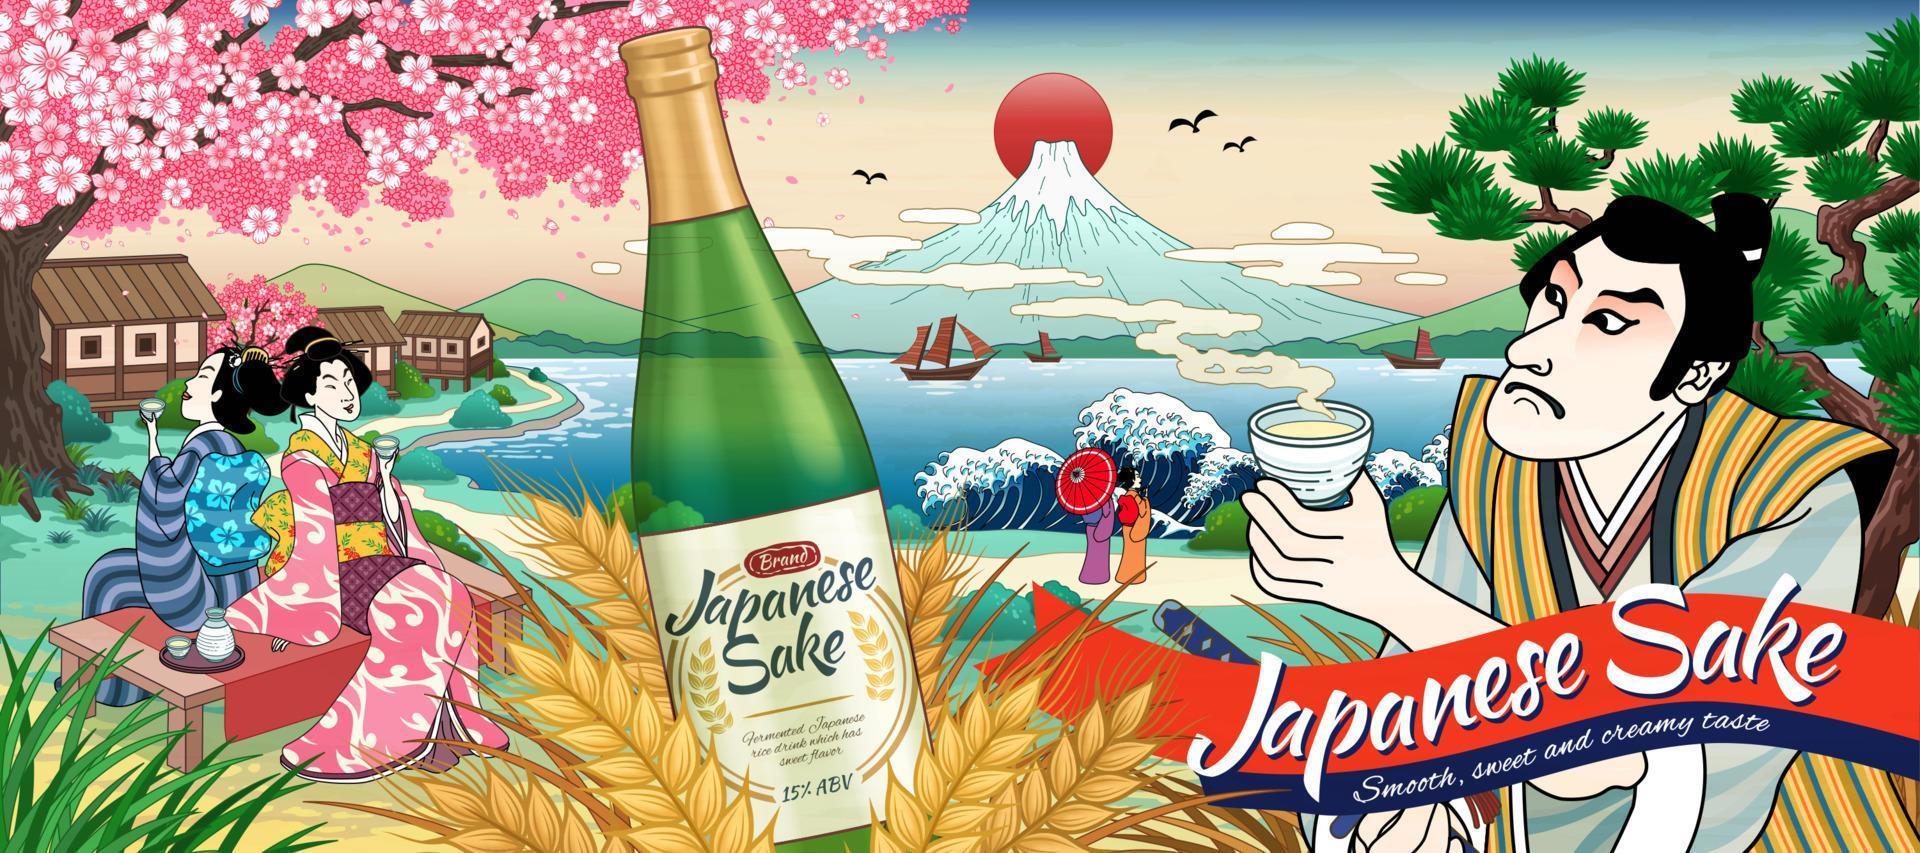 ukiyo e stijl Japans rijstwijn advertenties met mensen drinken rijst- wijn vector